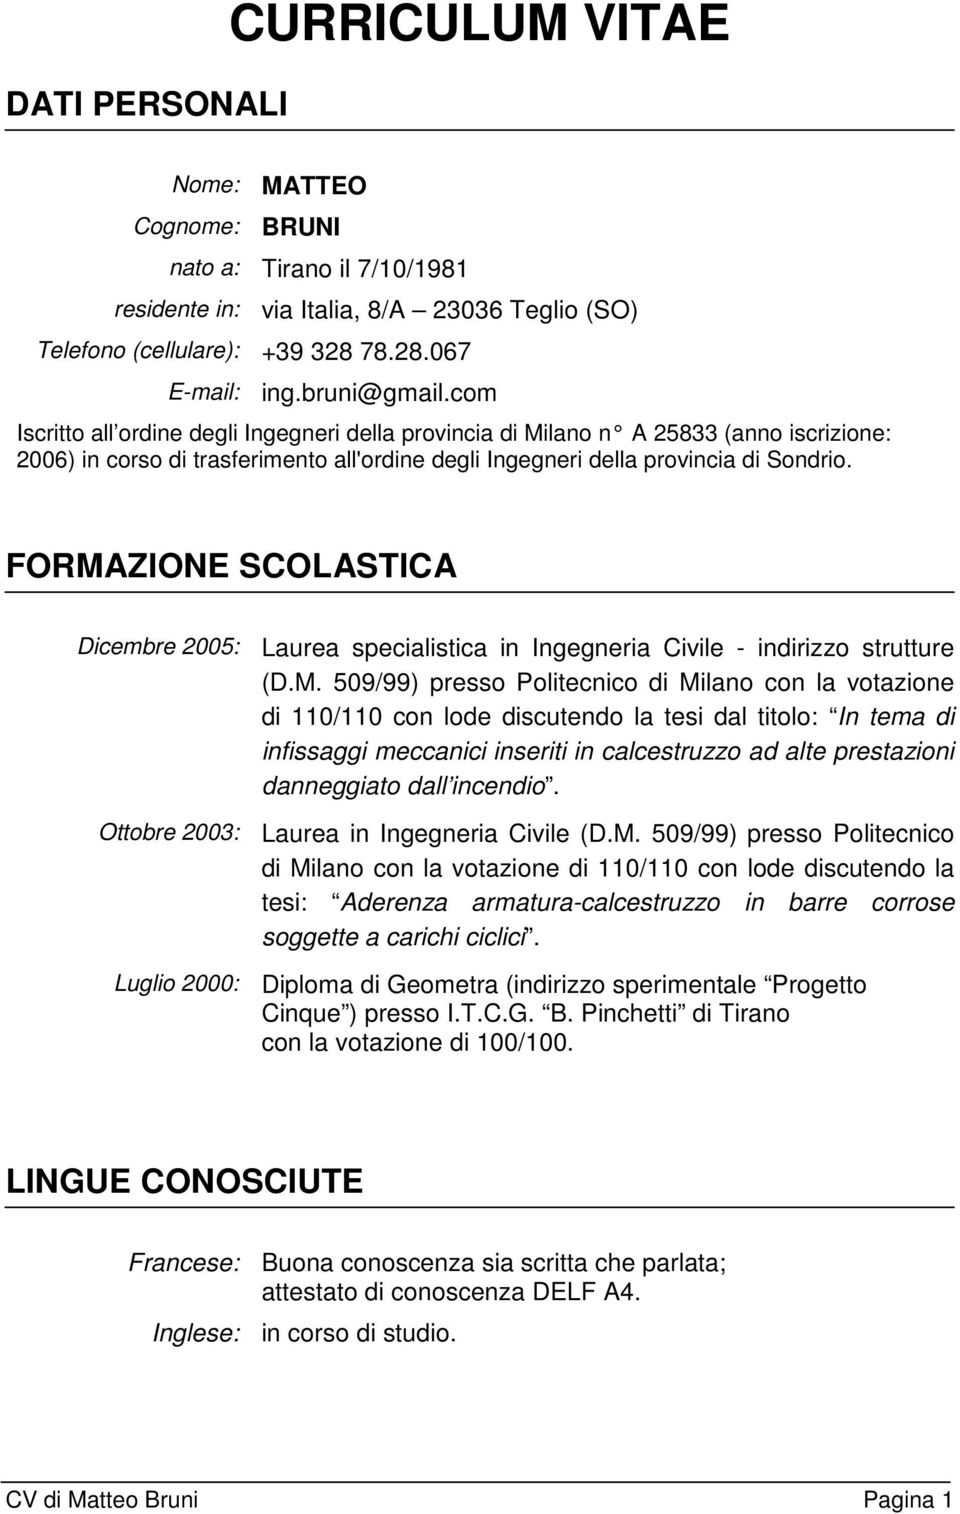 FORMAZIONE SCOLASTICA Dicembre 2005: Laurea specialistica in Ingegneria Civile - indirizzo strutture (D.M. 509/99) presso Politecnico di Milano con la votazione di 110/110 con lode discutendo la tesi